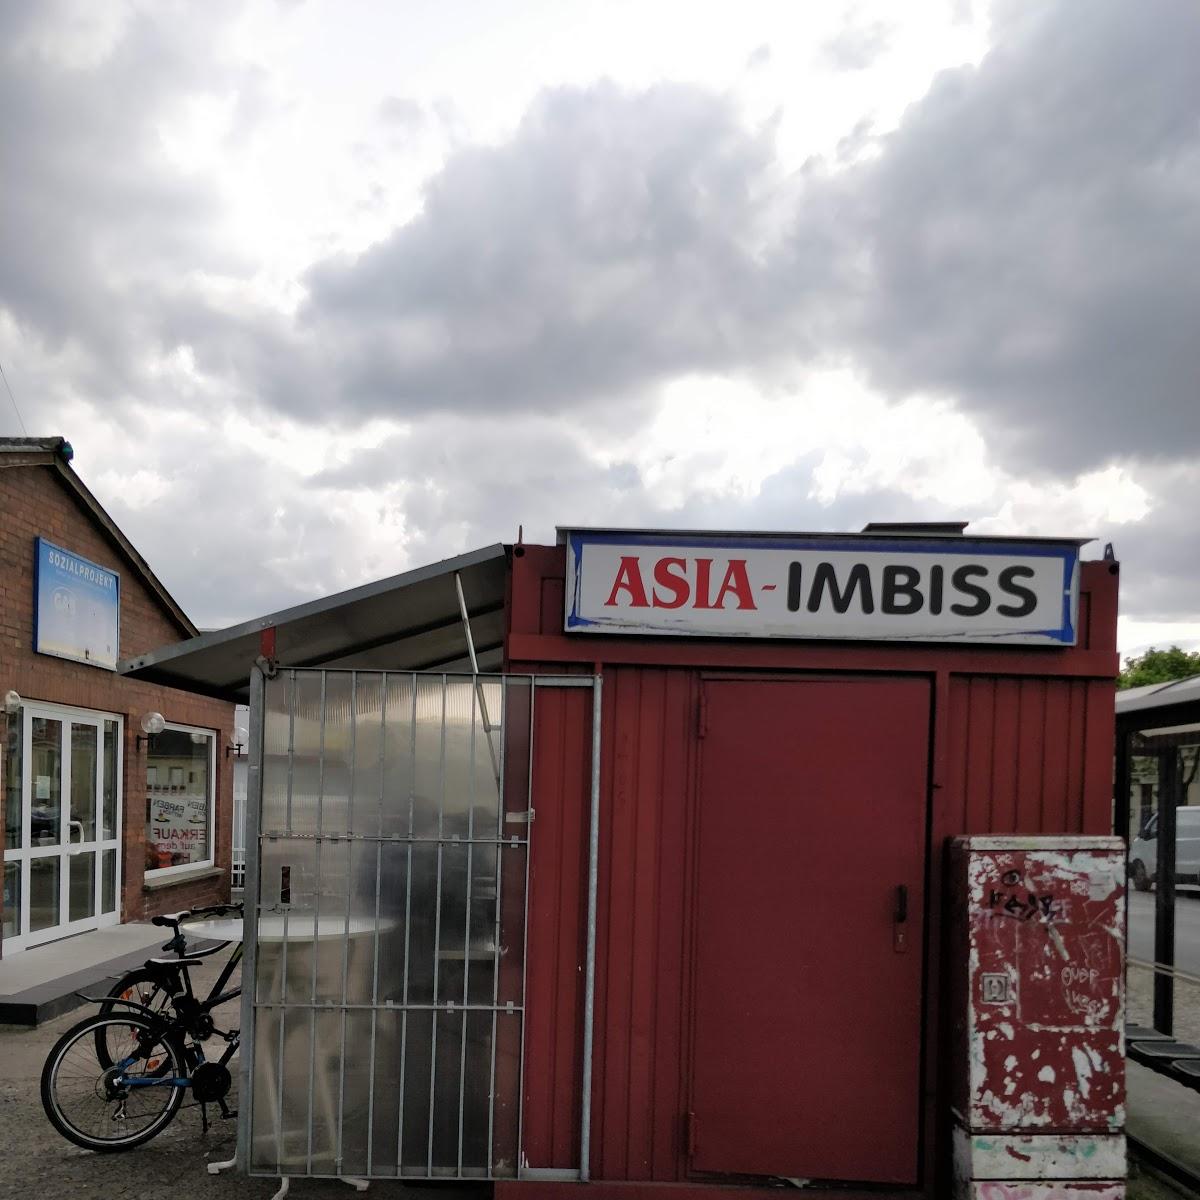 Restaurant "ASIA IMBISS" in  Berlin